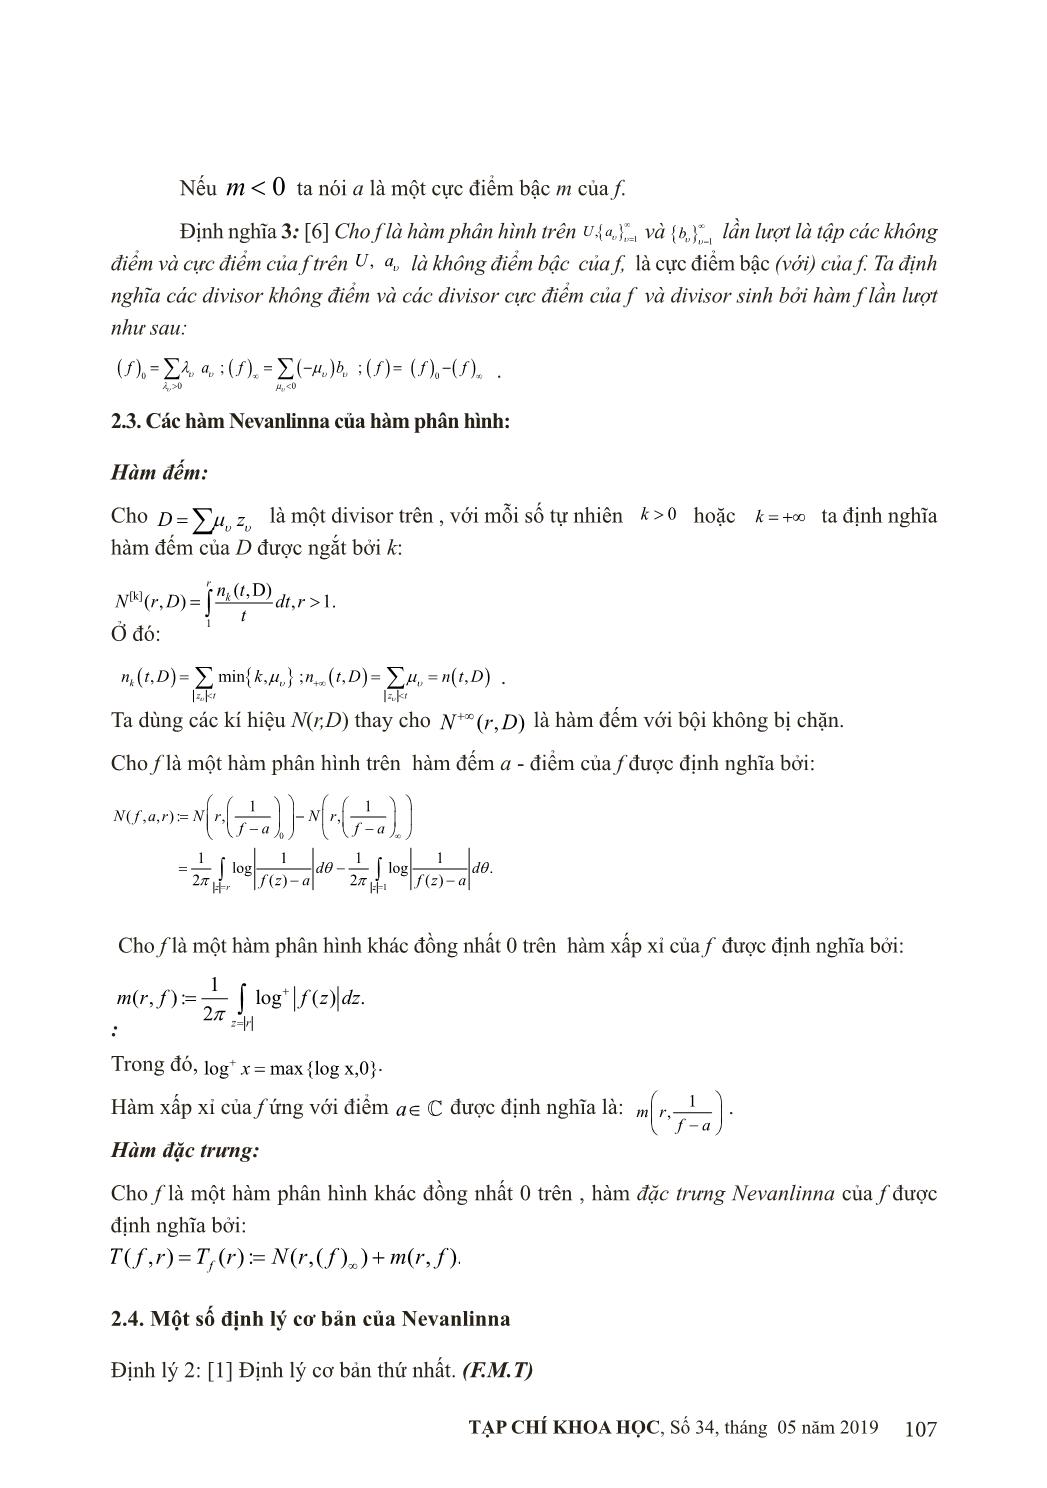 Vấn đề duy nhất của hàm phân hình đối với các cặp điểm trang 3